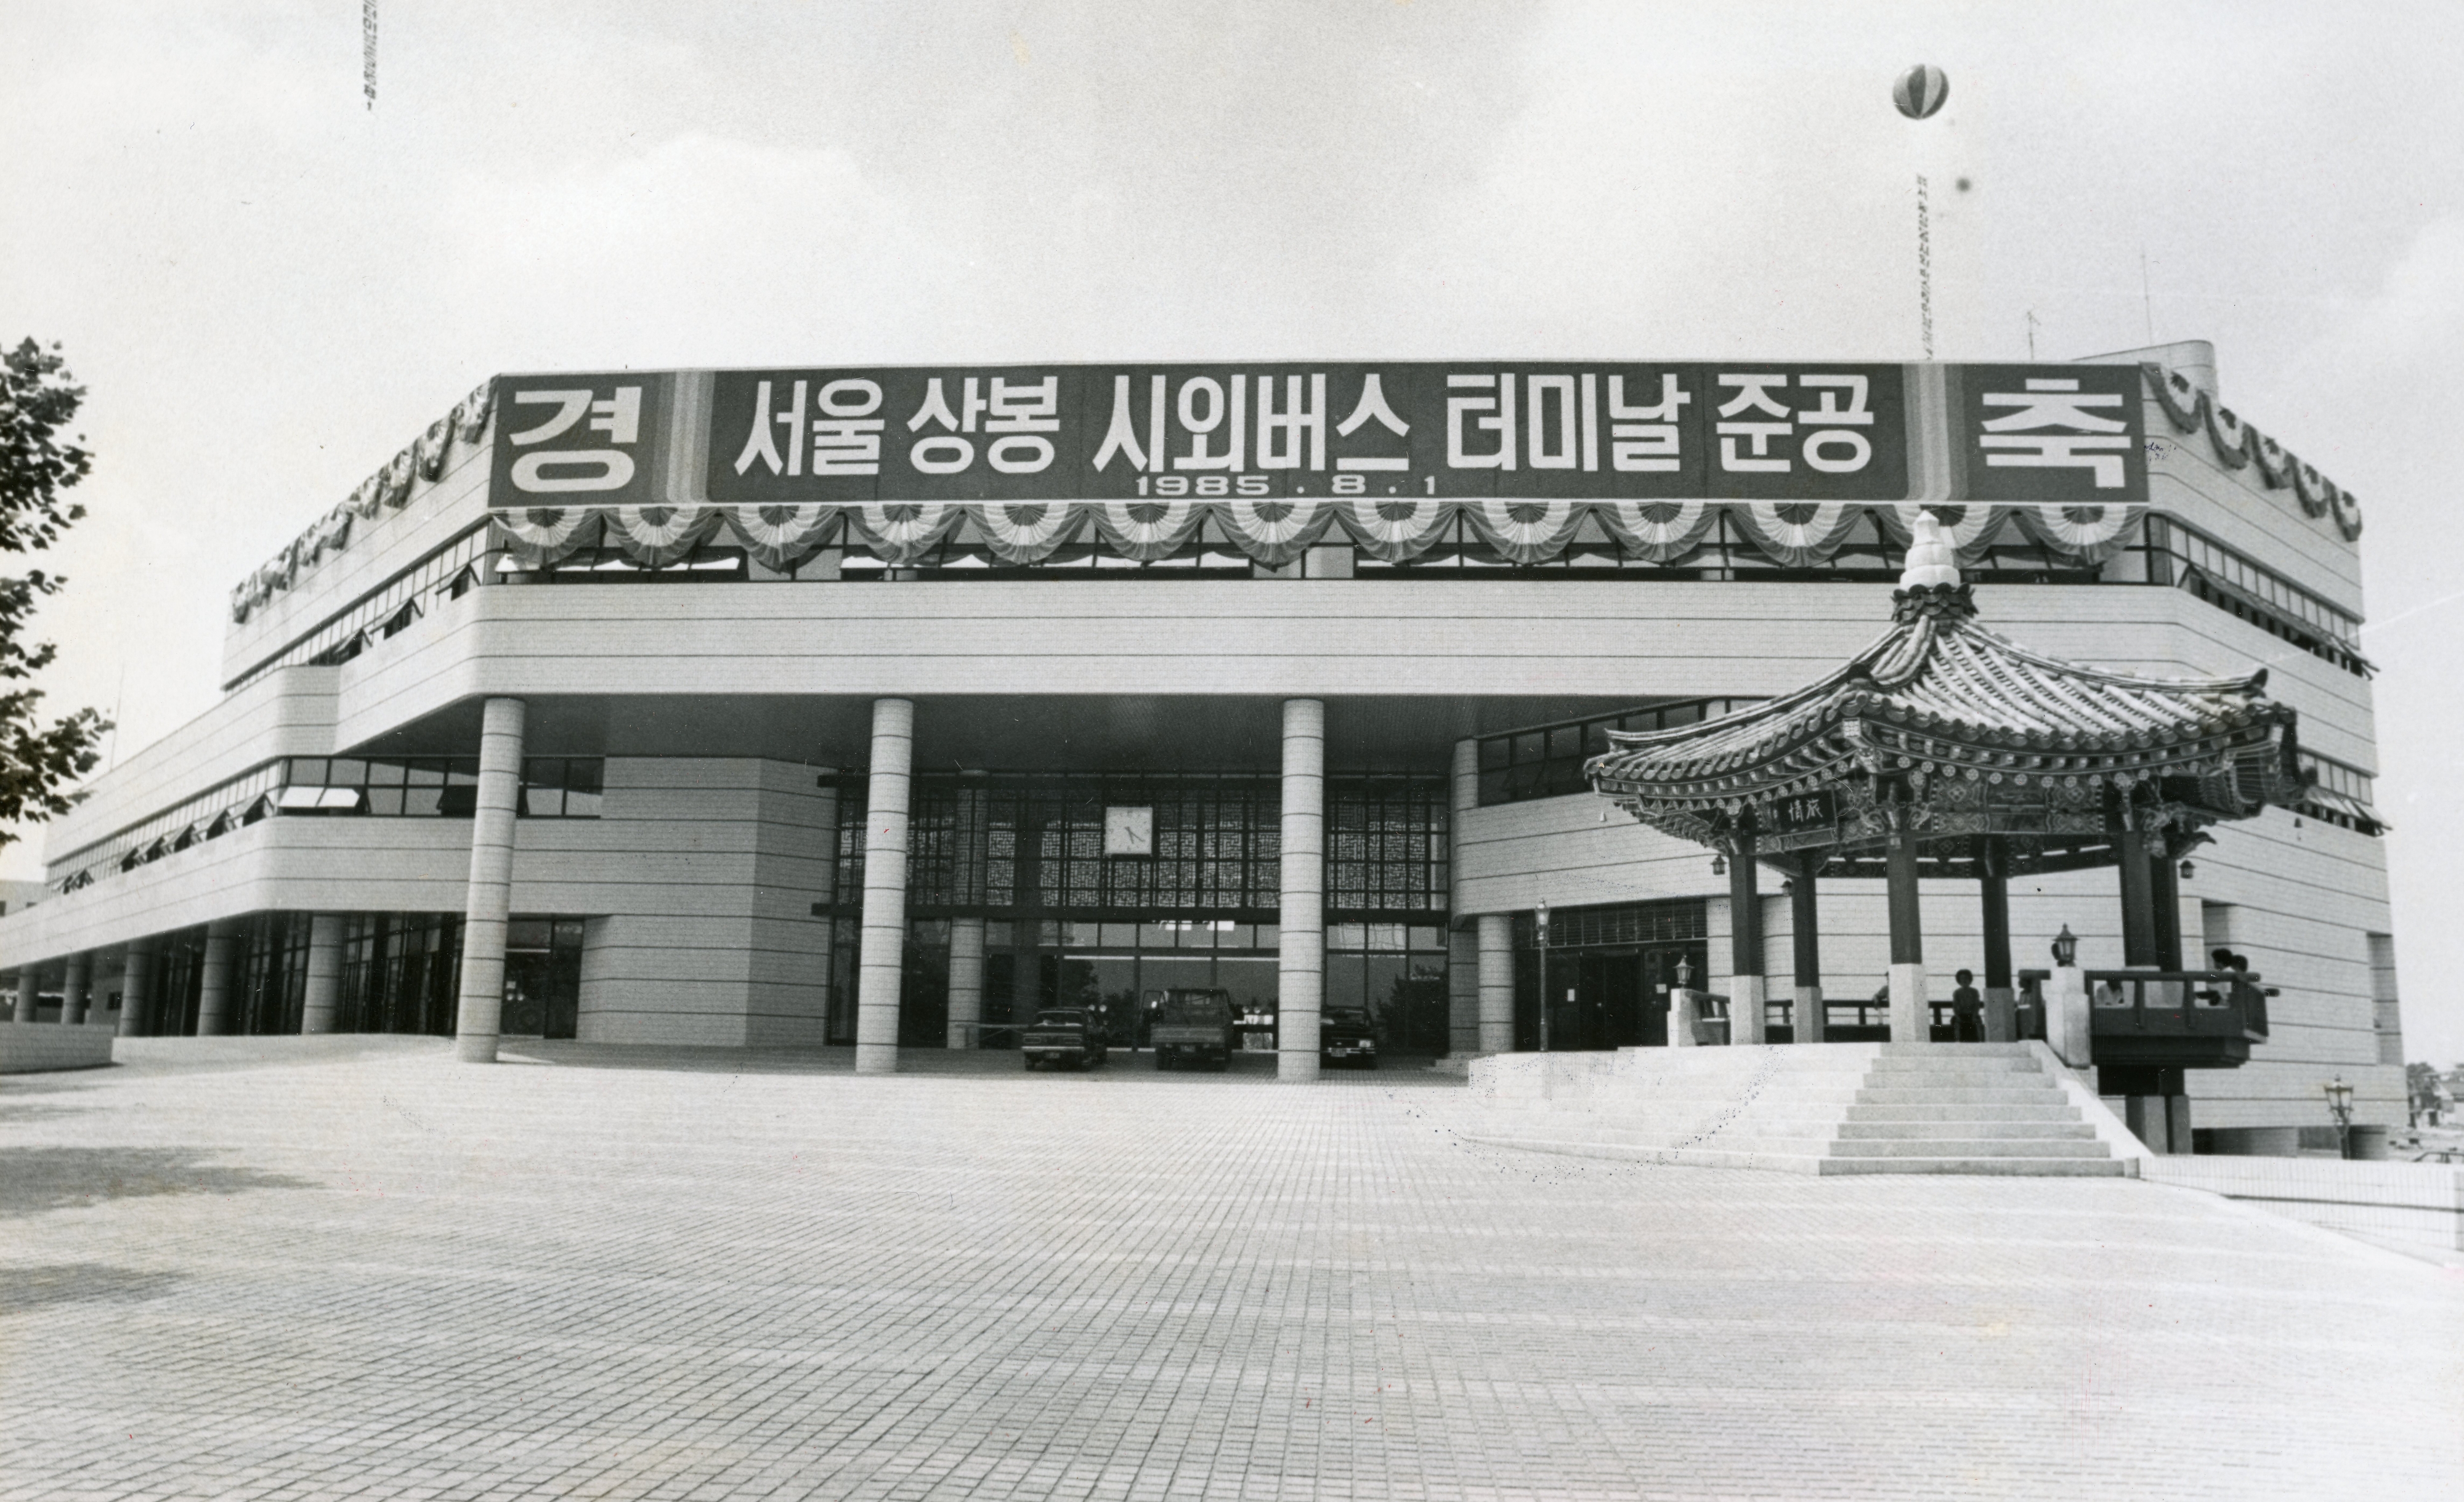 1985년 8월 29일 상봉시외버스터미널. 같은 해 9월 2일 120개 노선 551대의 시외버스가 운행되기 시작했다. 서울신문 DB